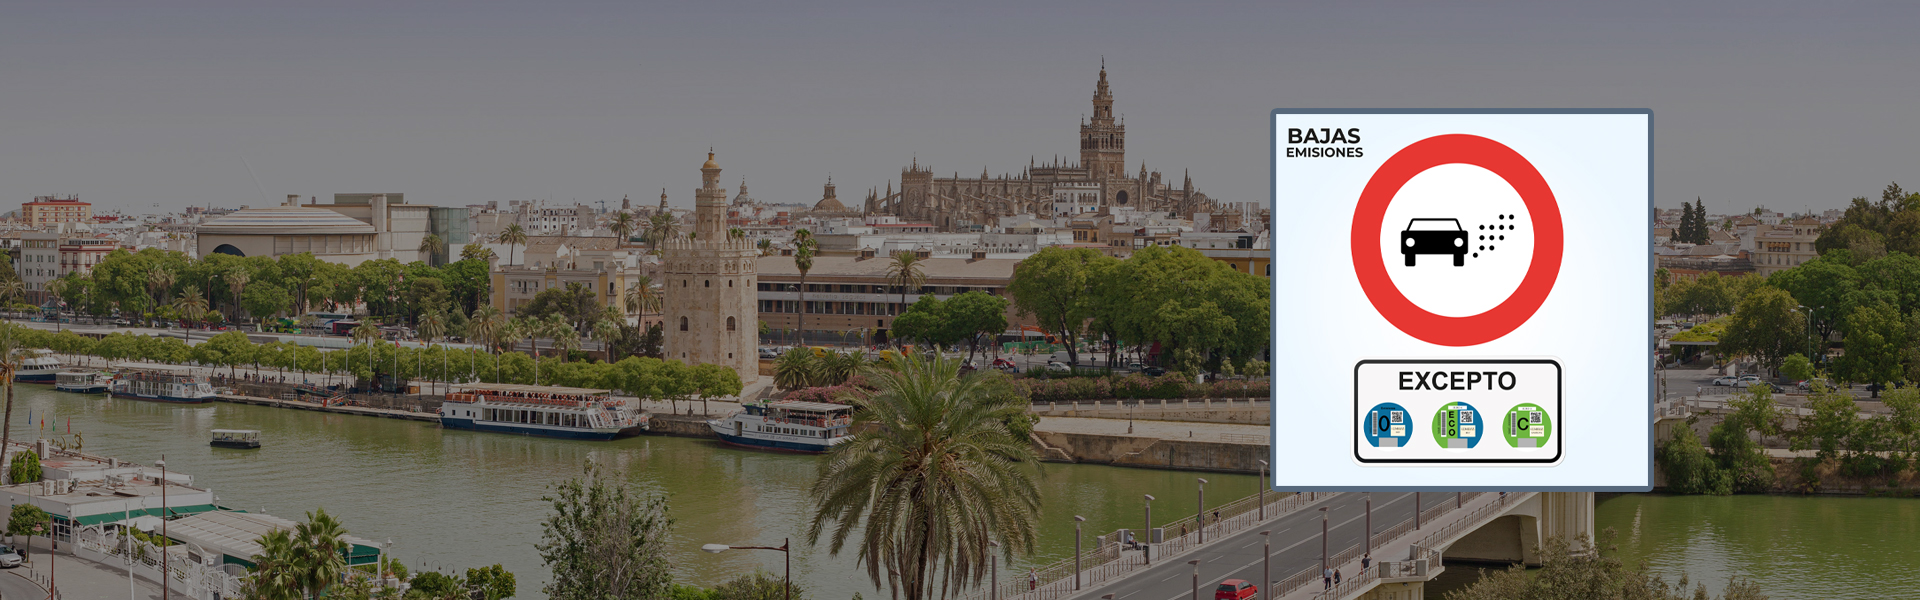 Zonas de bajas emisiones de Sevilla